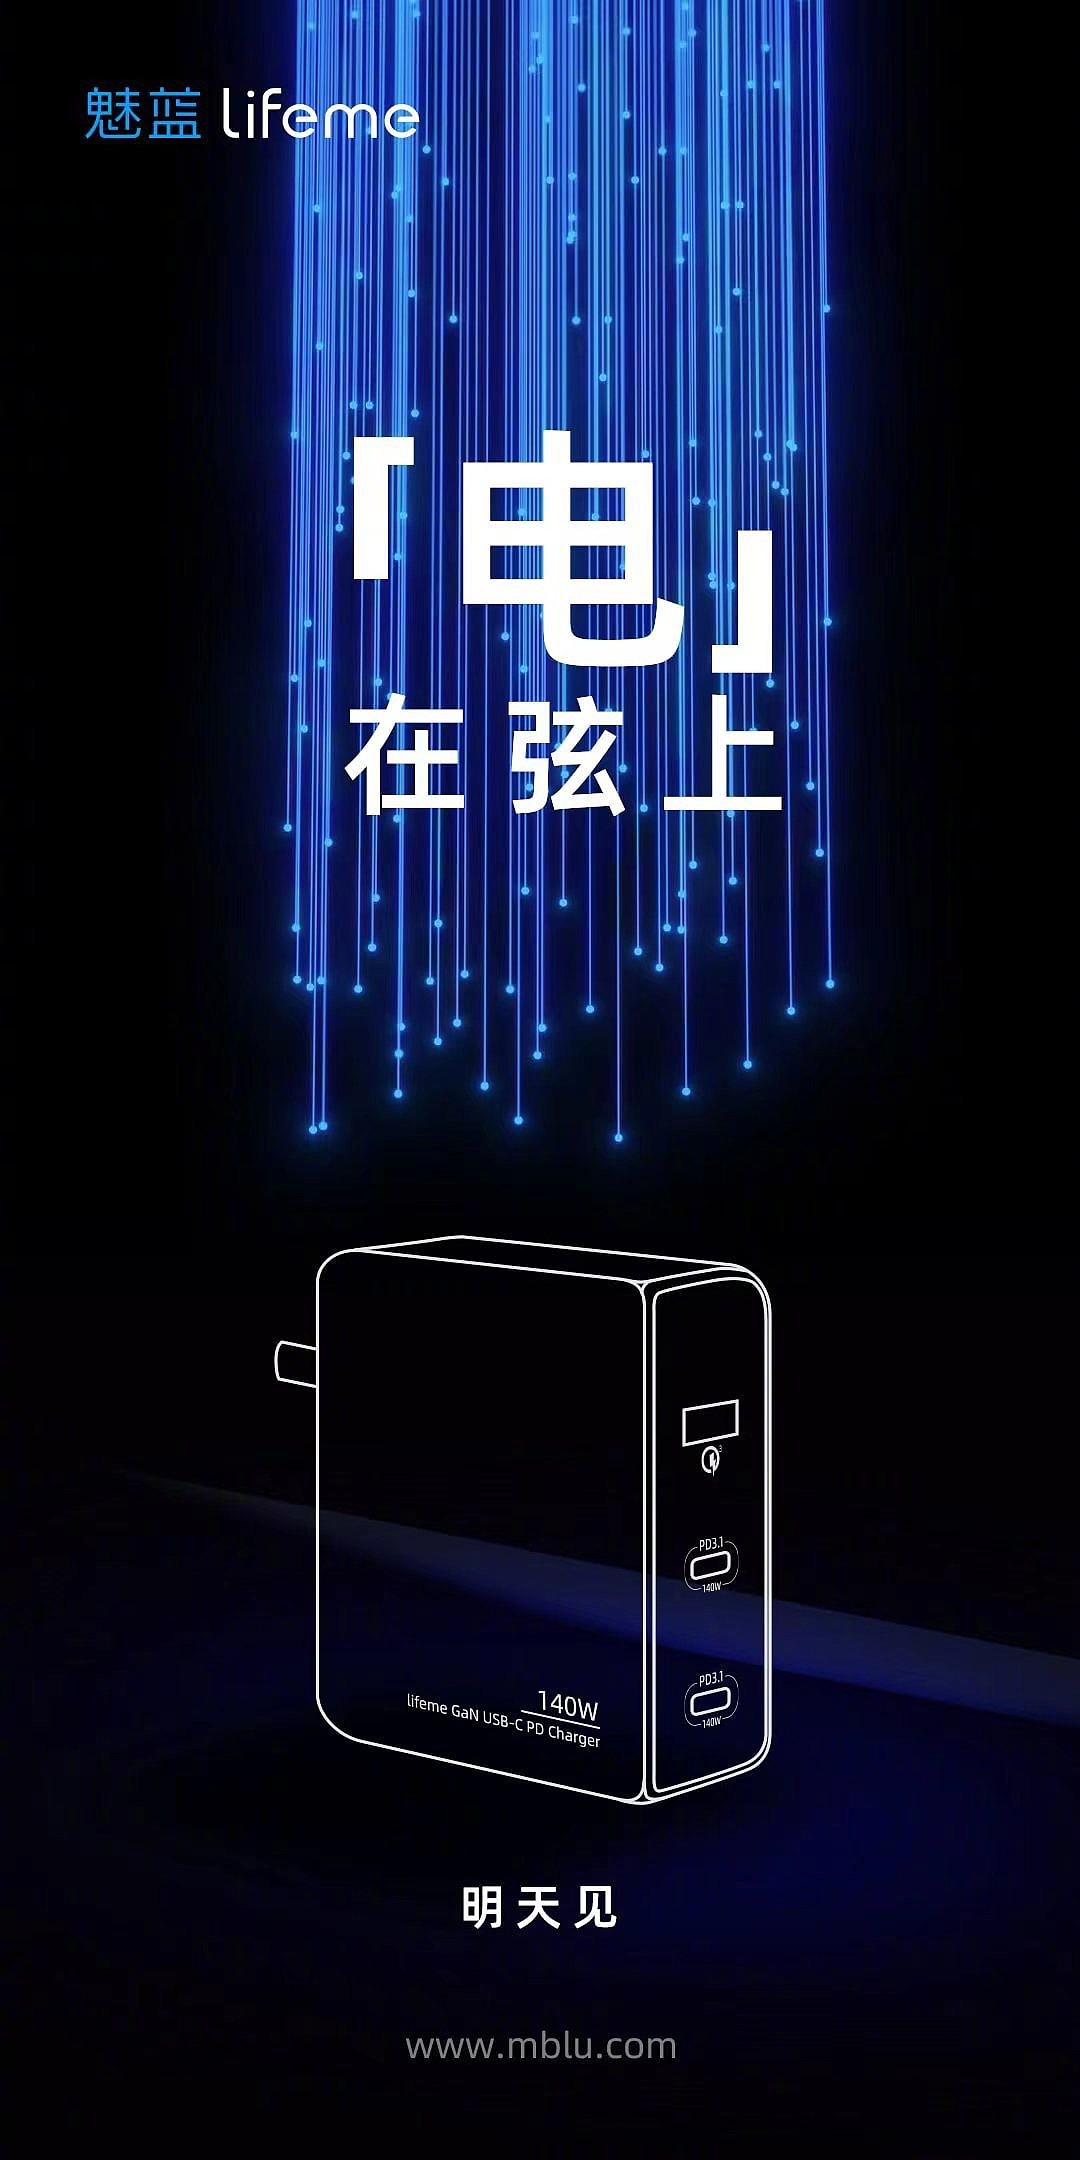 魅蓝 lifeme 将于明日发布新款 140W 氮化镓双 USB-C 口 PD 3.1 充电器 - 1